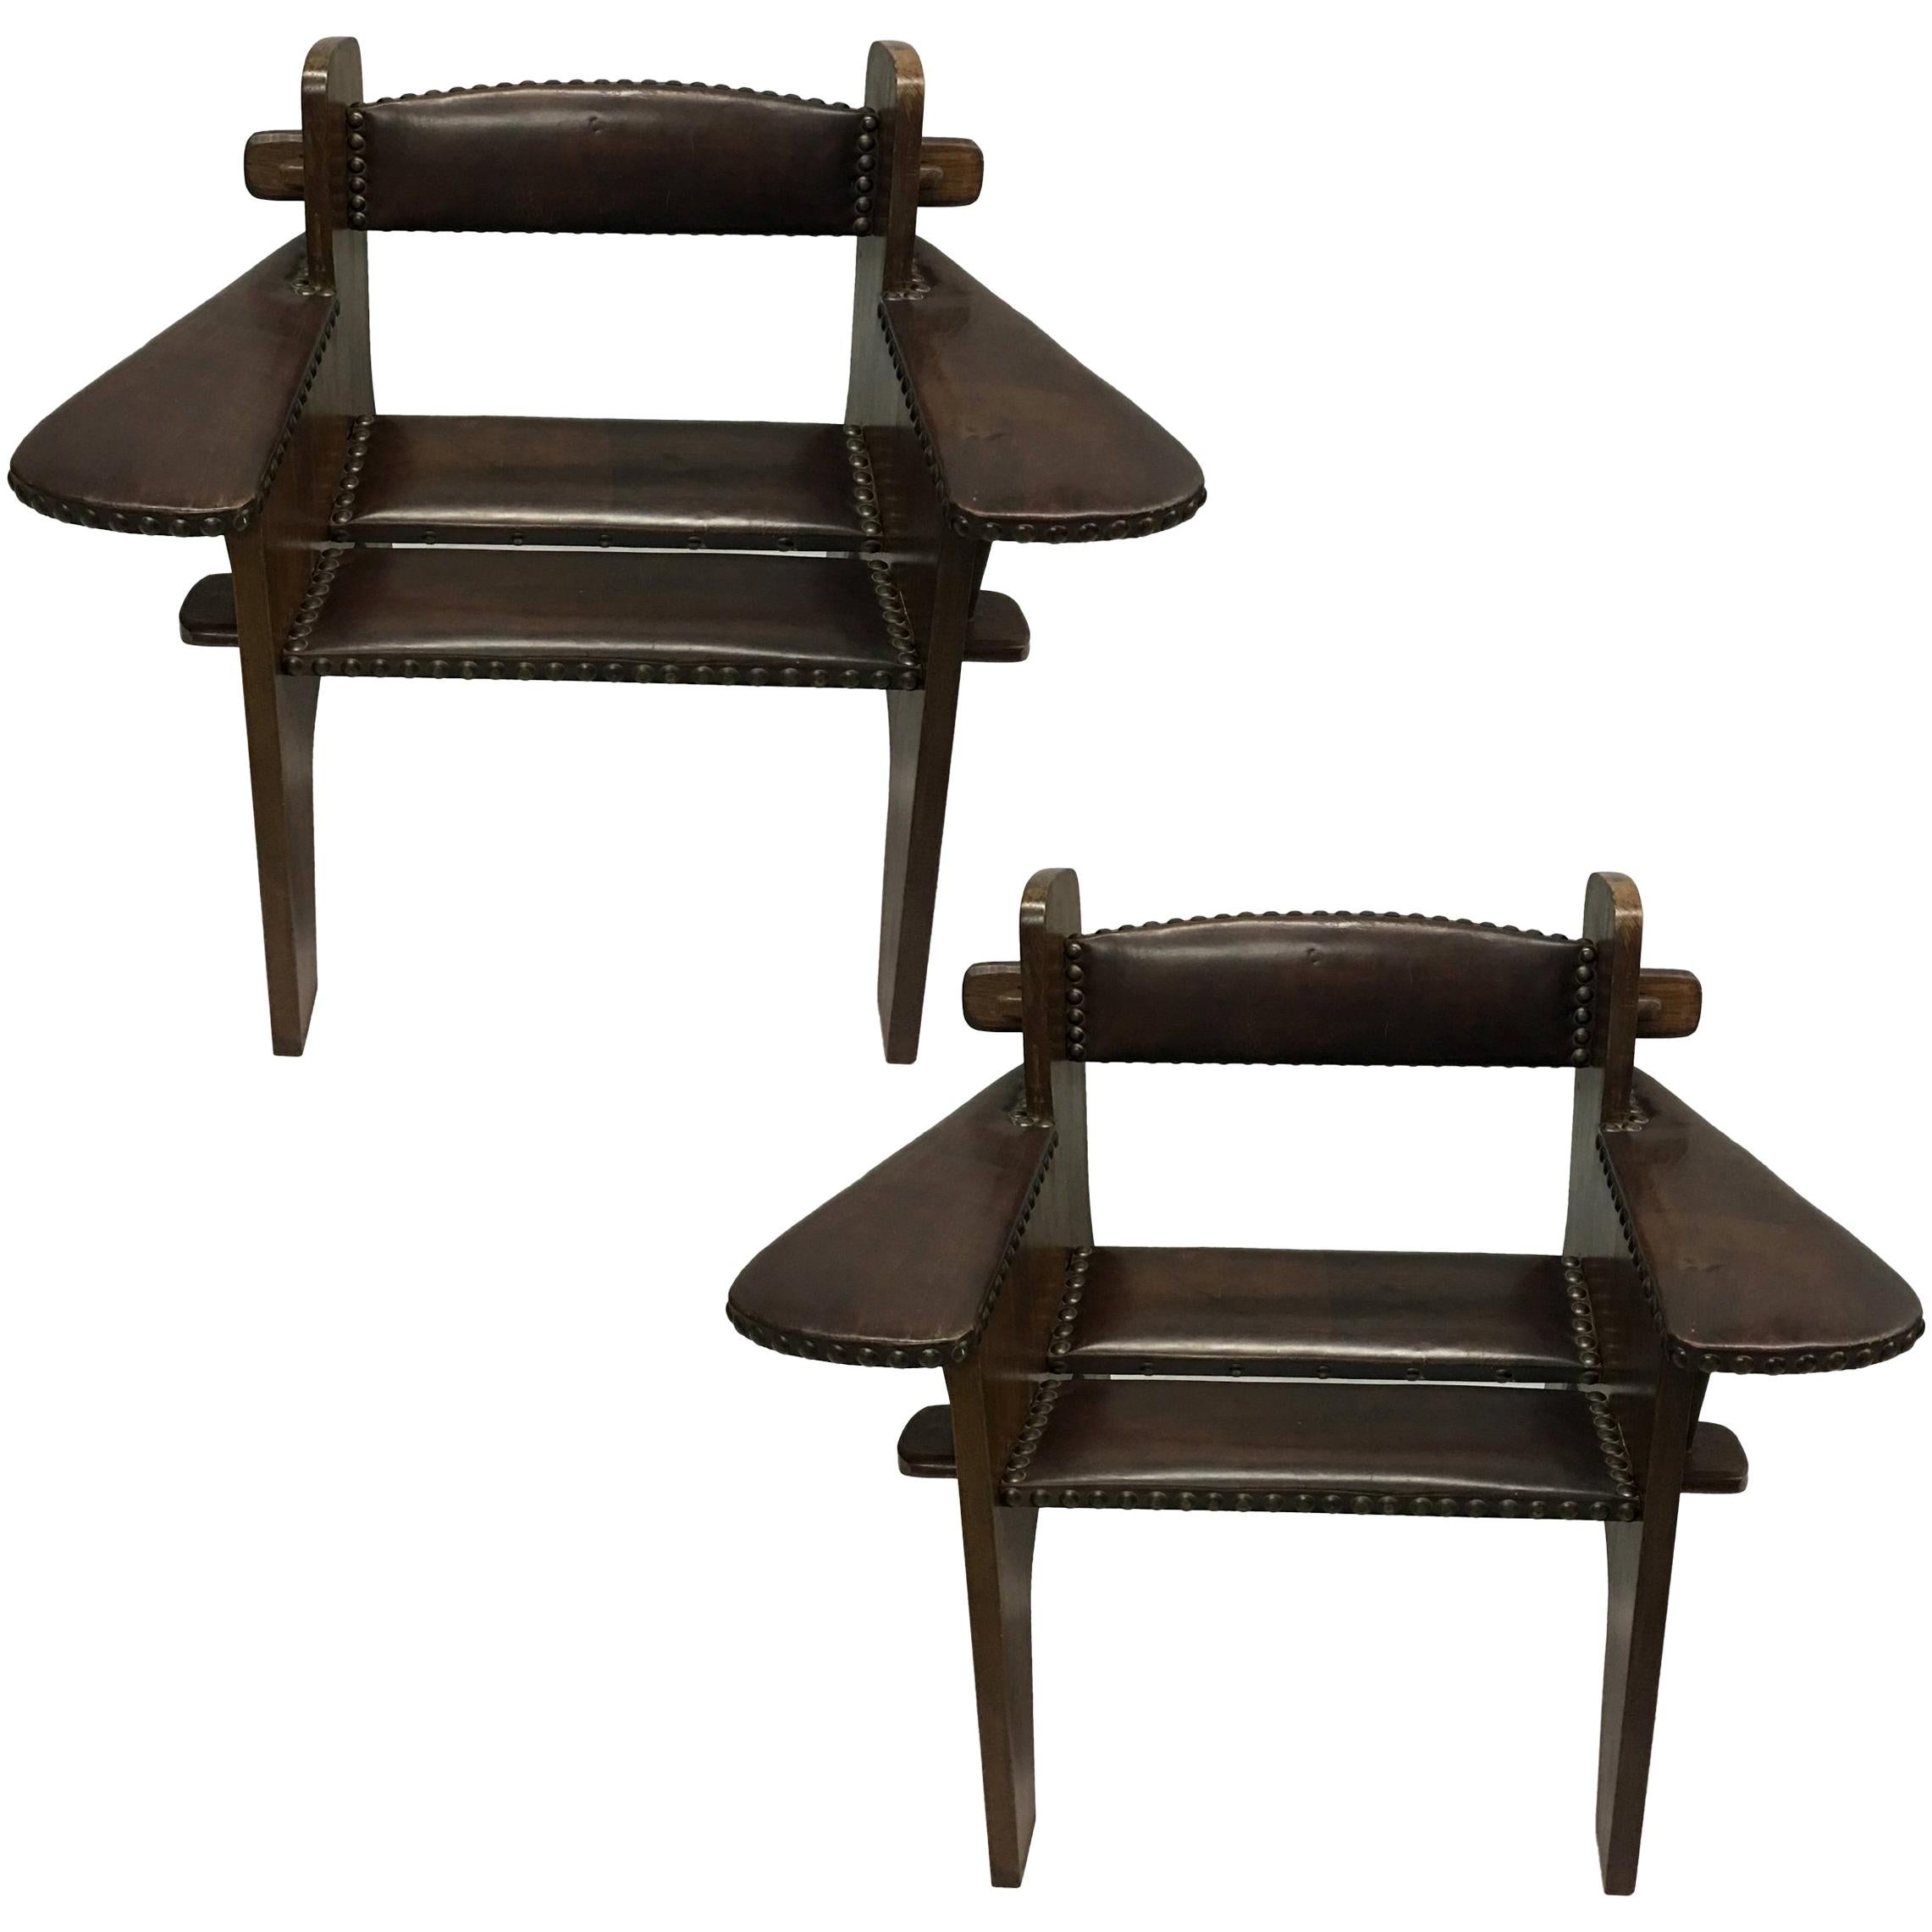 Paire de chaises longues futuristes italiennes en bois et cuir, attribuée à Giacomo Balla